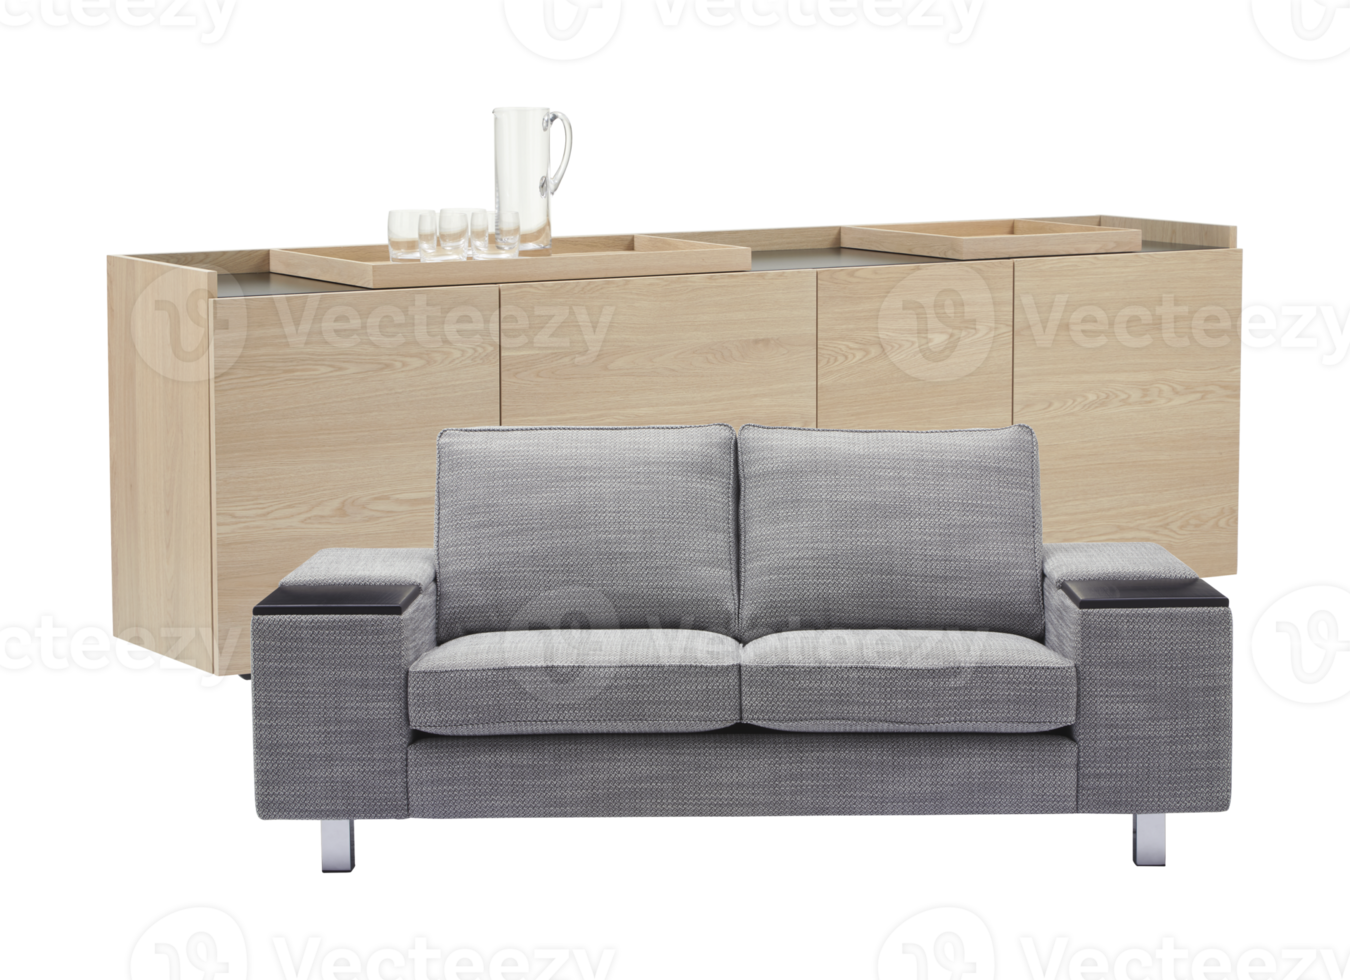 canapé gris avec armoires en bois couleur chêne arrière-plan transparent découpé png